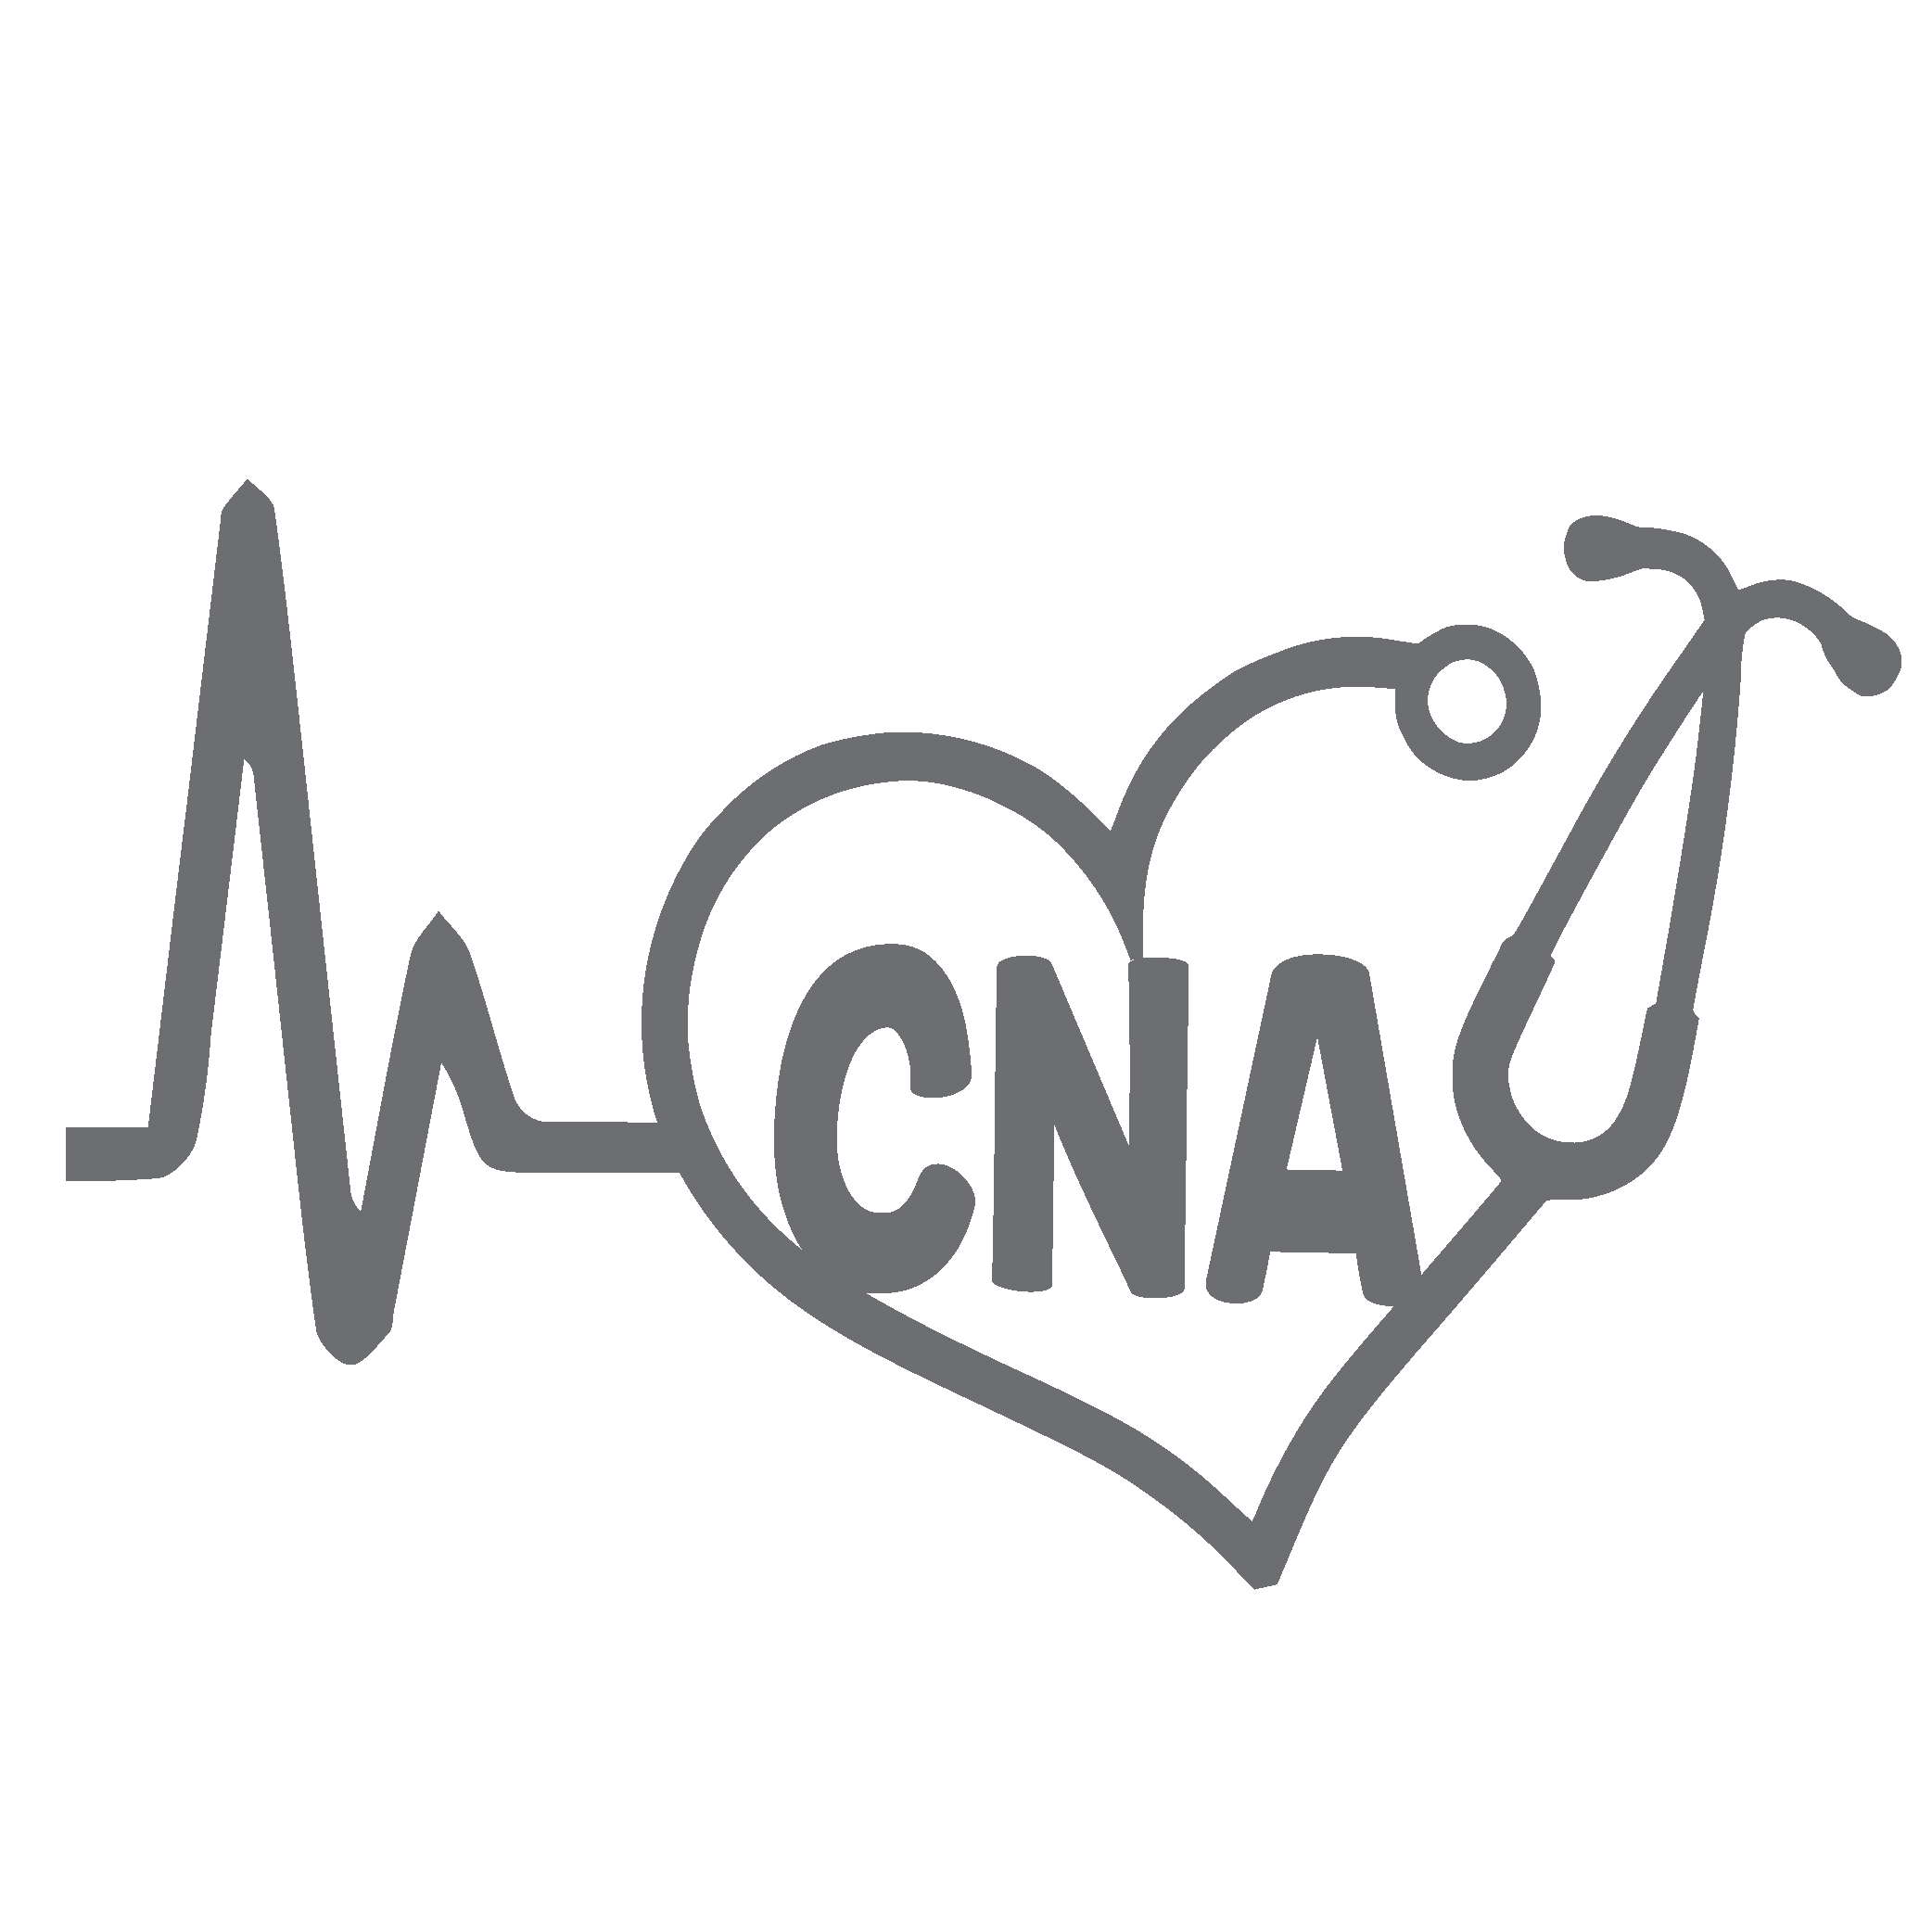 Heartbeat cna for certified nursing assistant vinyl graphic decal by shop vinyl design â shop vinyl design